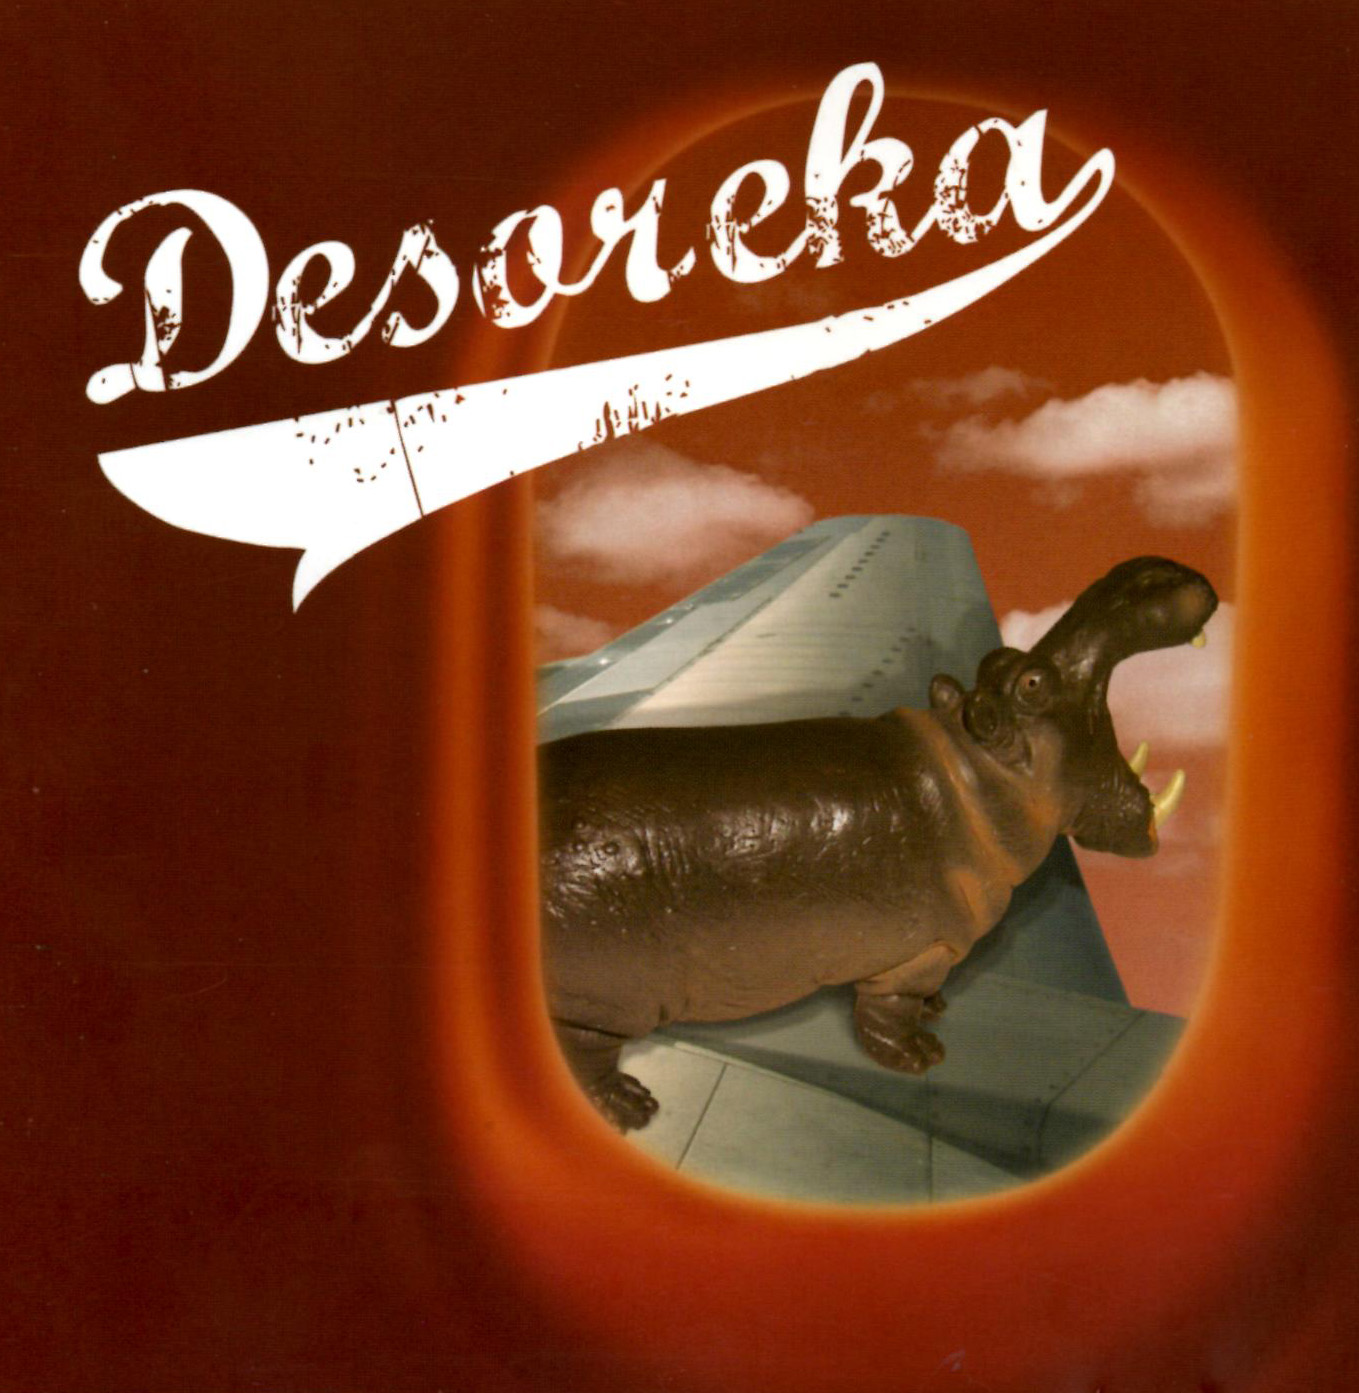 Desoreka